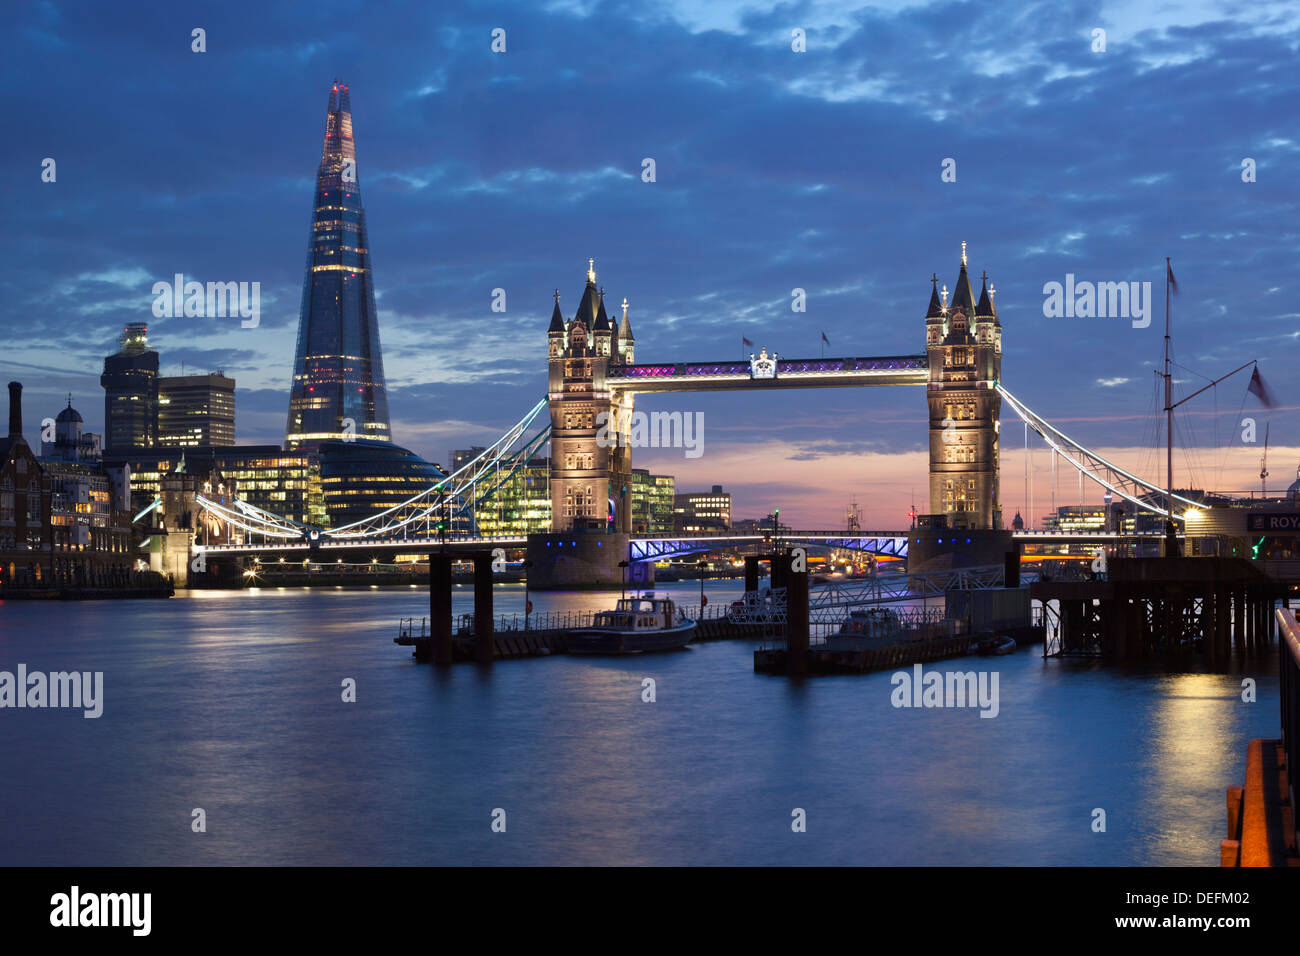 Le Shard et le Tower Bridge sur la Tamise de nuit, Londres, Angleterre, Royaume-Uni, Europe Banque D'Images